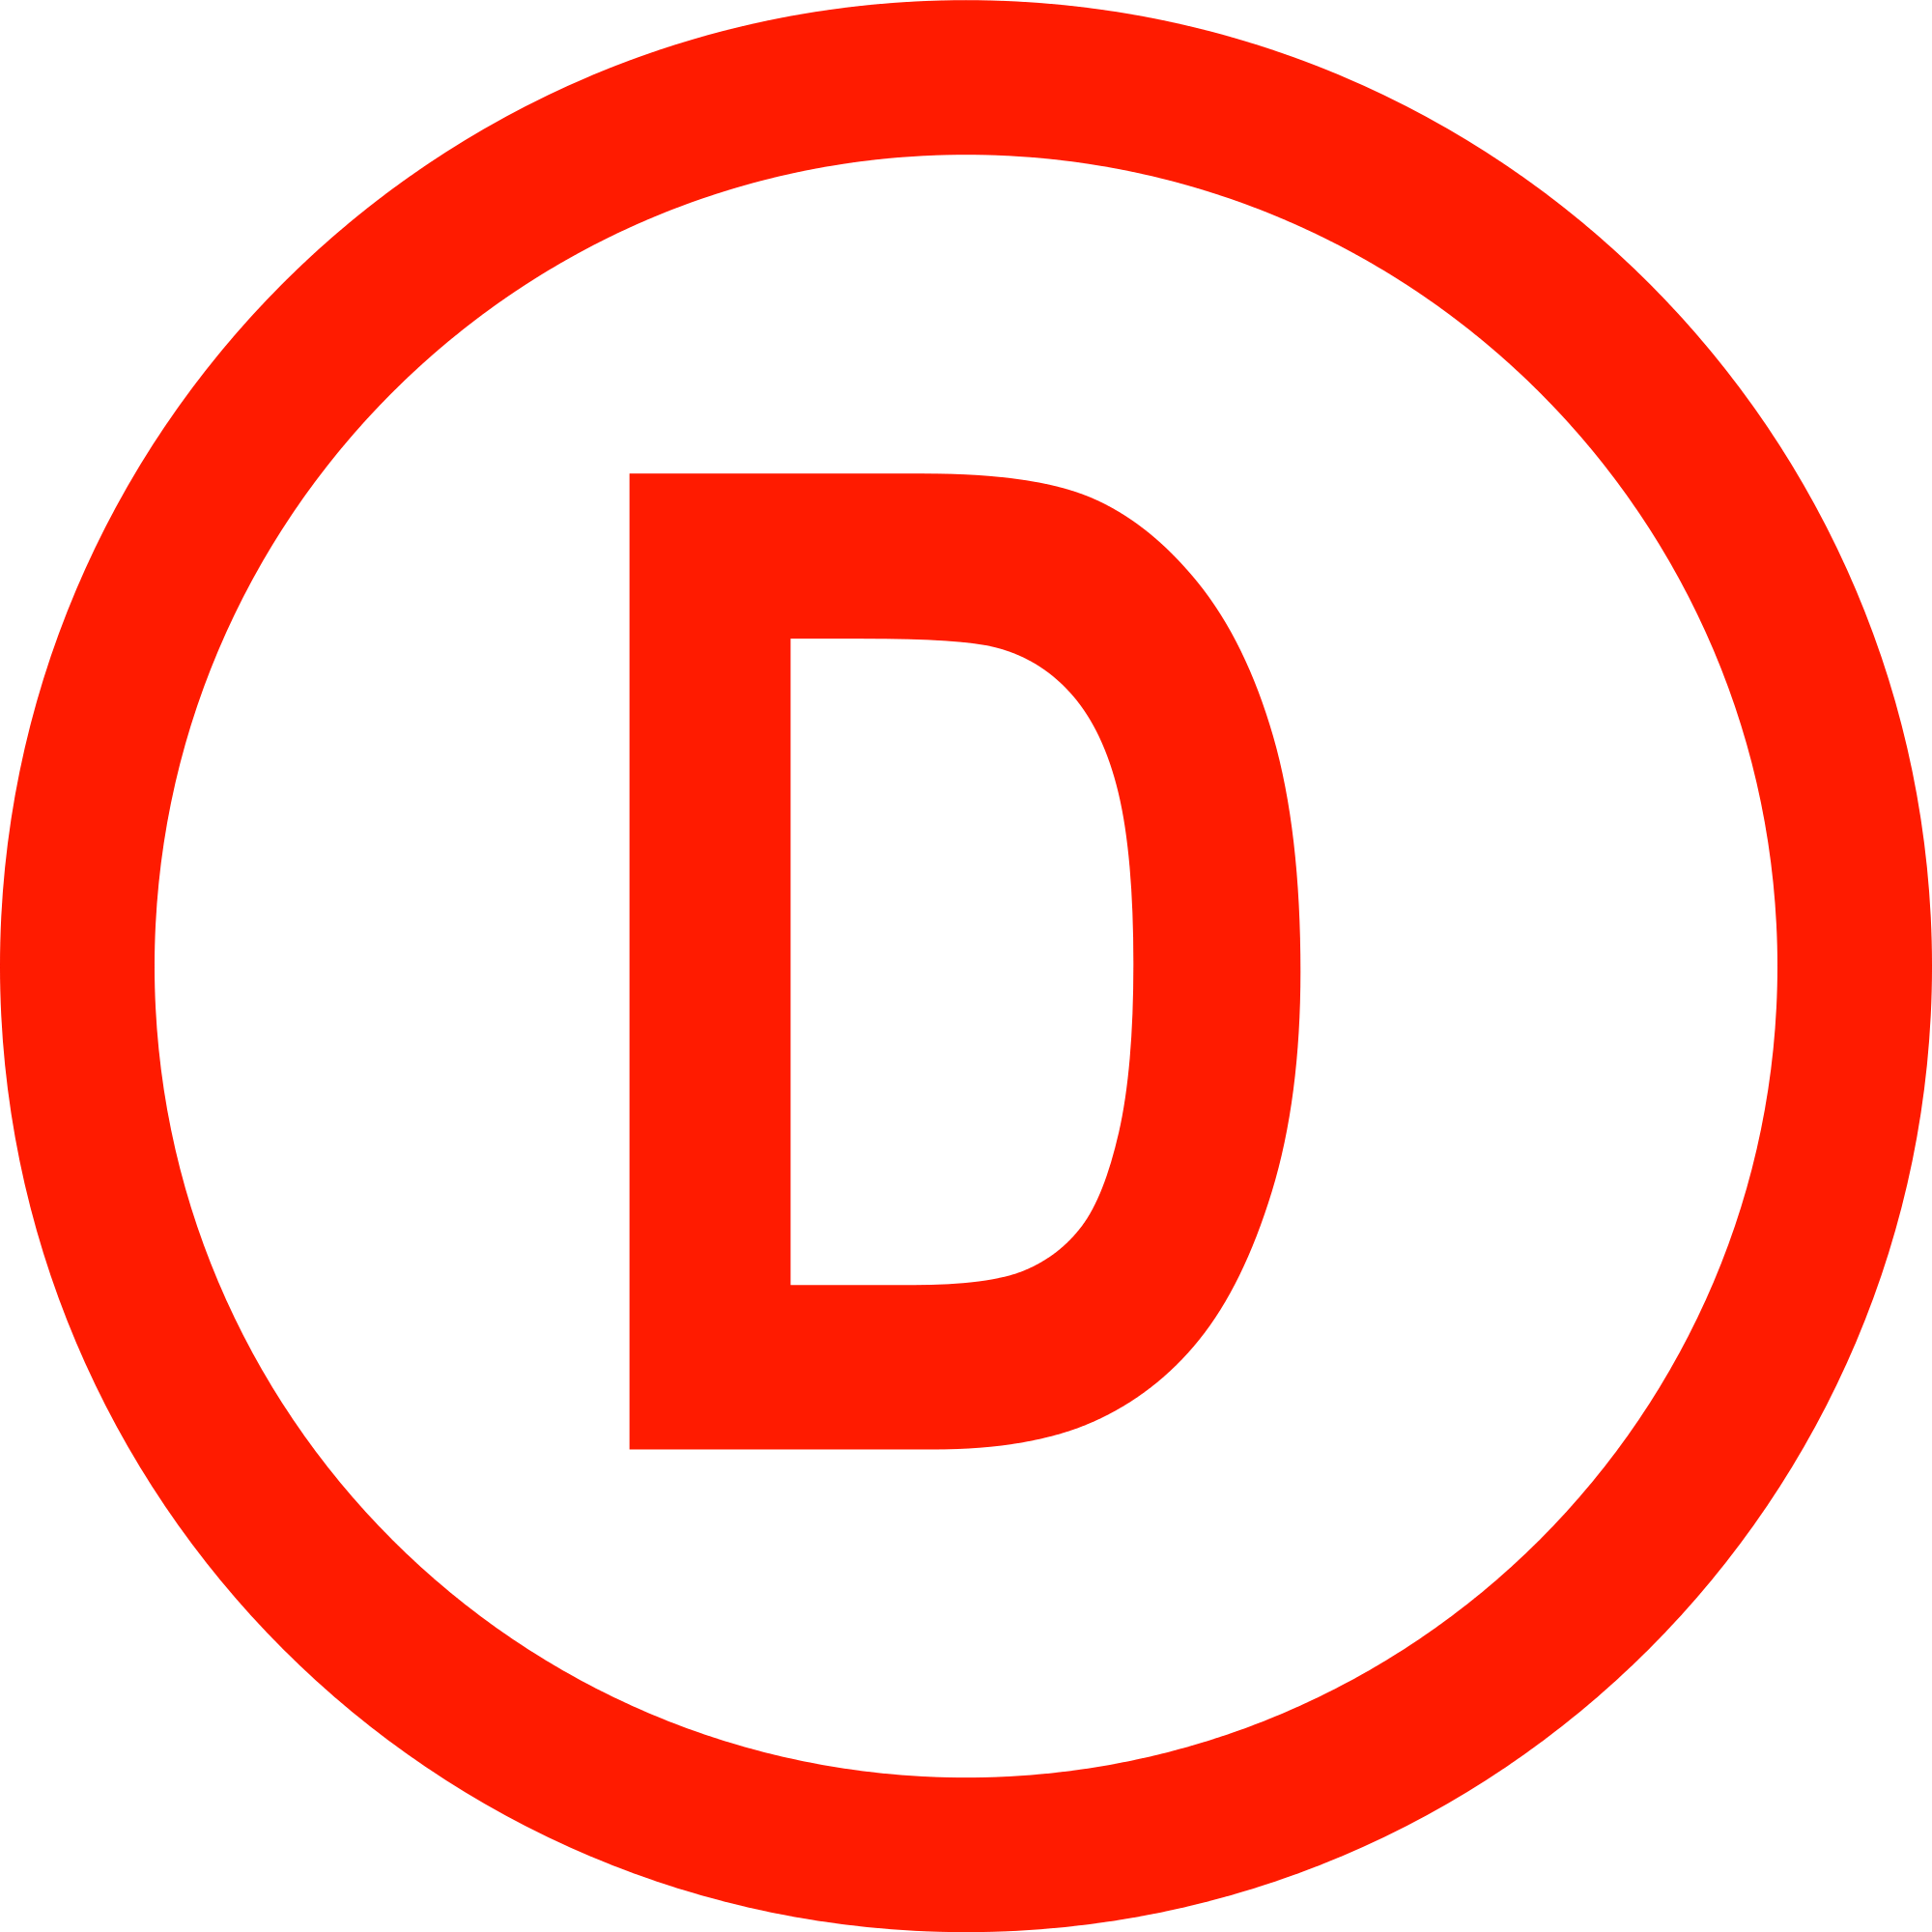 Red D Logo - D Letter Logo Png - Free Transparent PNG Logos